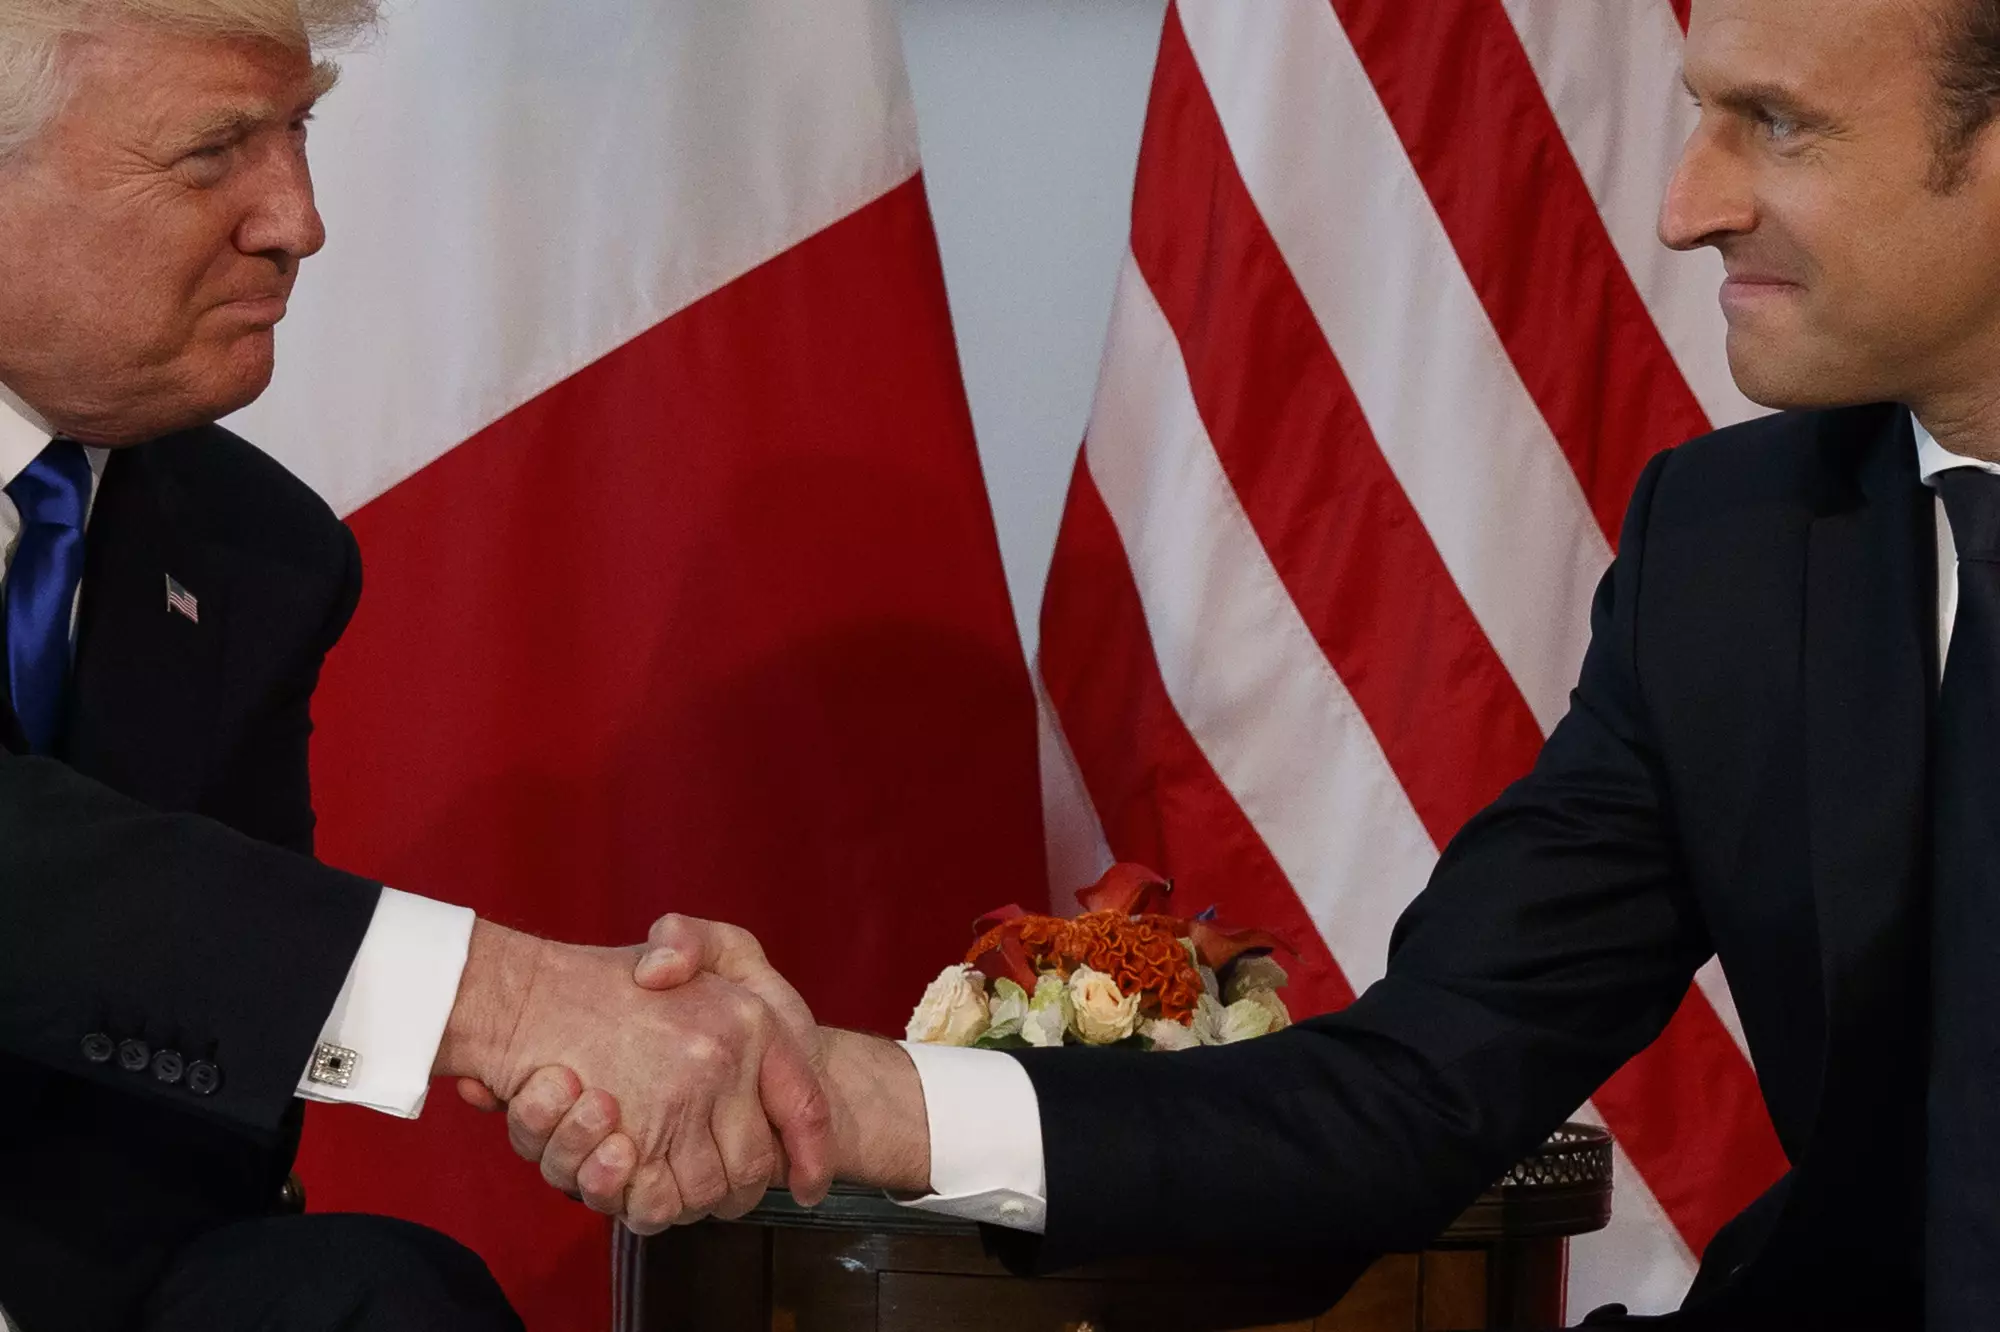 Donald Trump hand shake